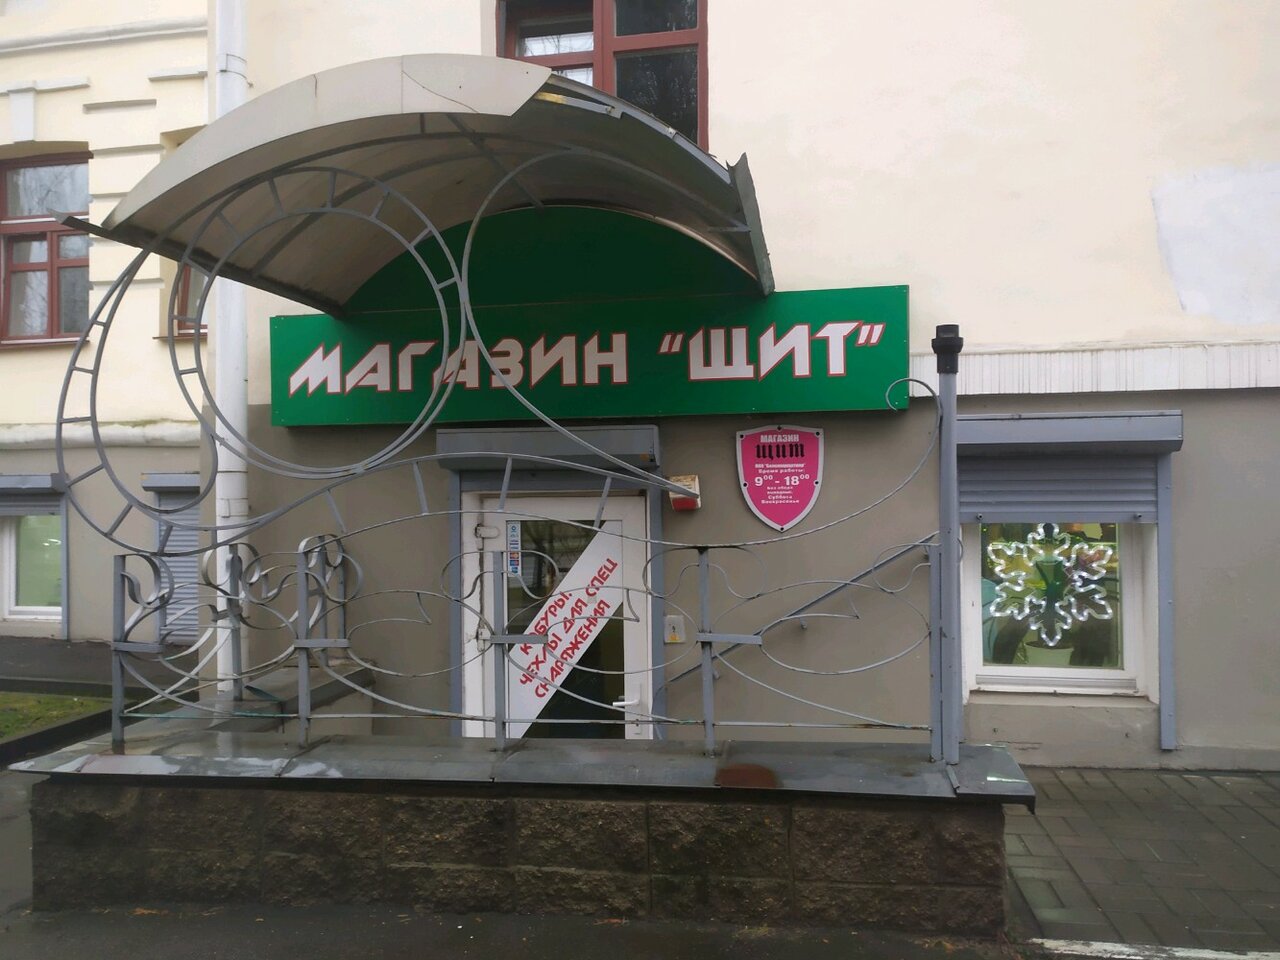 Магазин спецснаряжения "Щит" на Мясникова в Минске